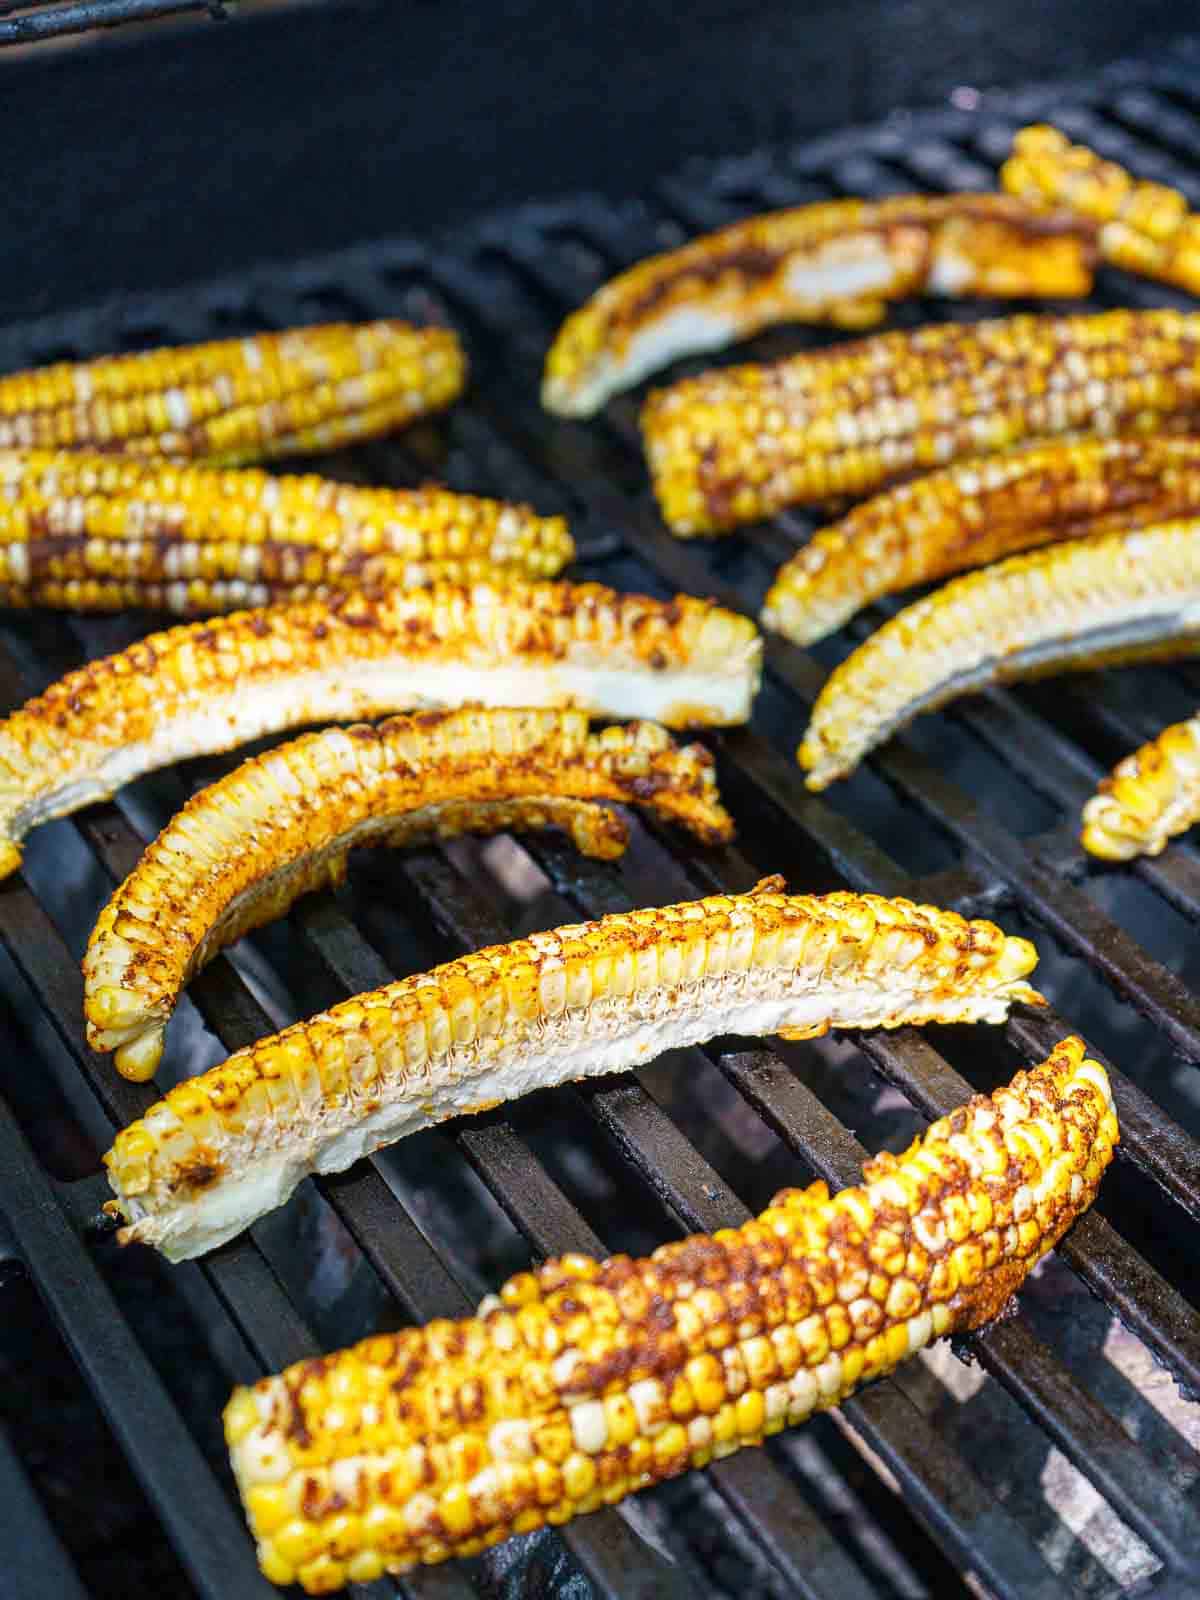 BBQ corn ribs on a grill